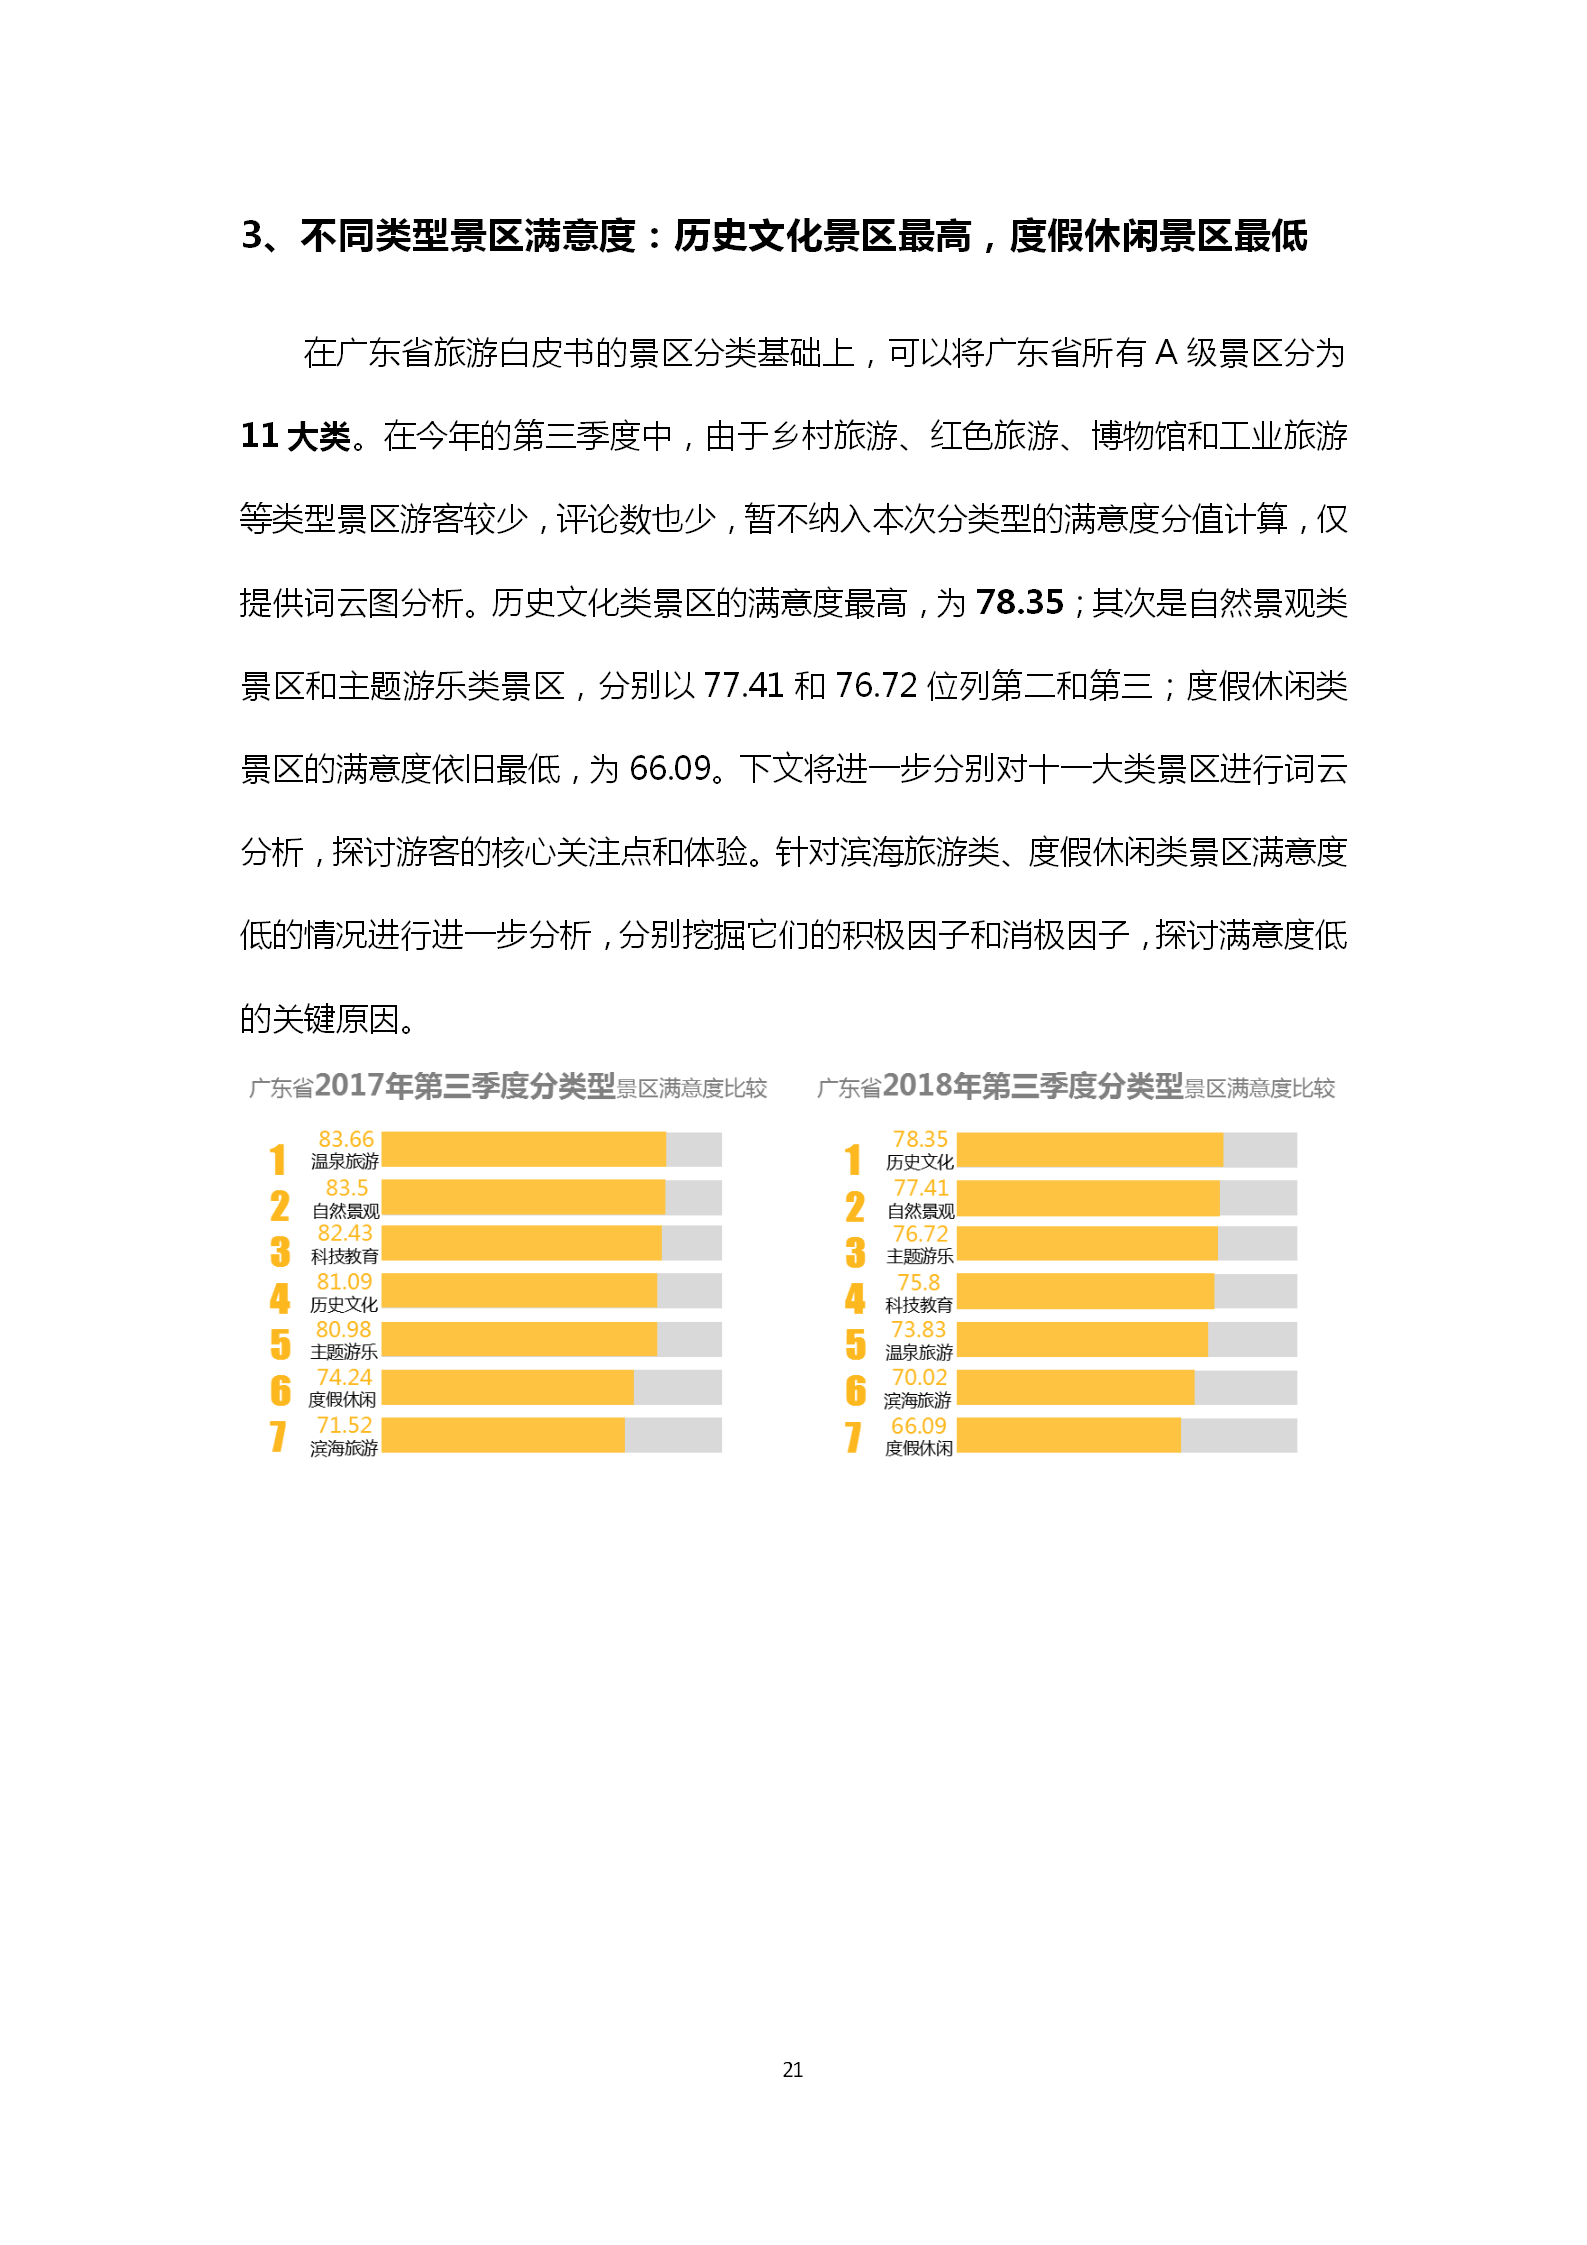 广东省旅游景区游客满意度大数据调查报告-2018年第三季度20181106_22